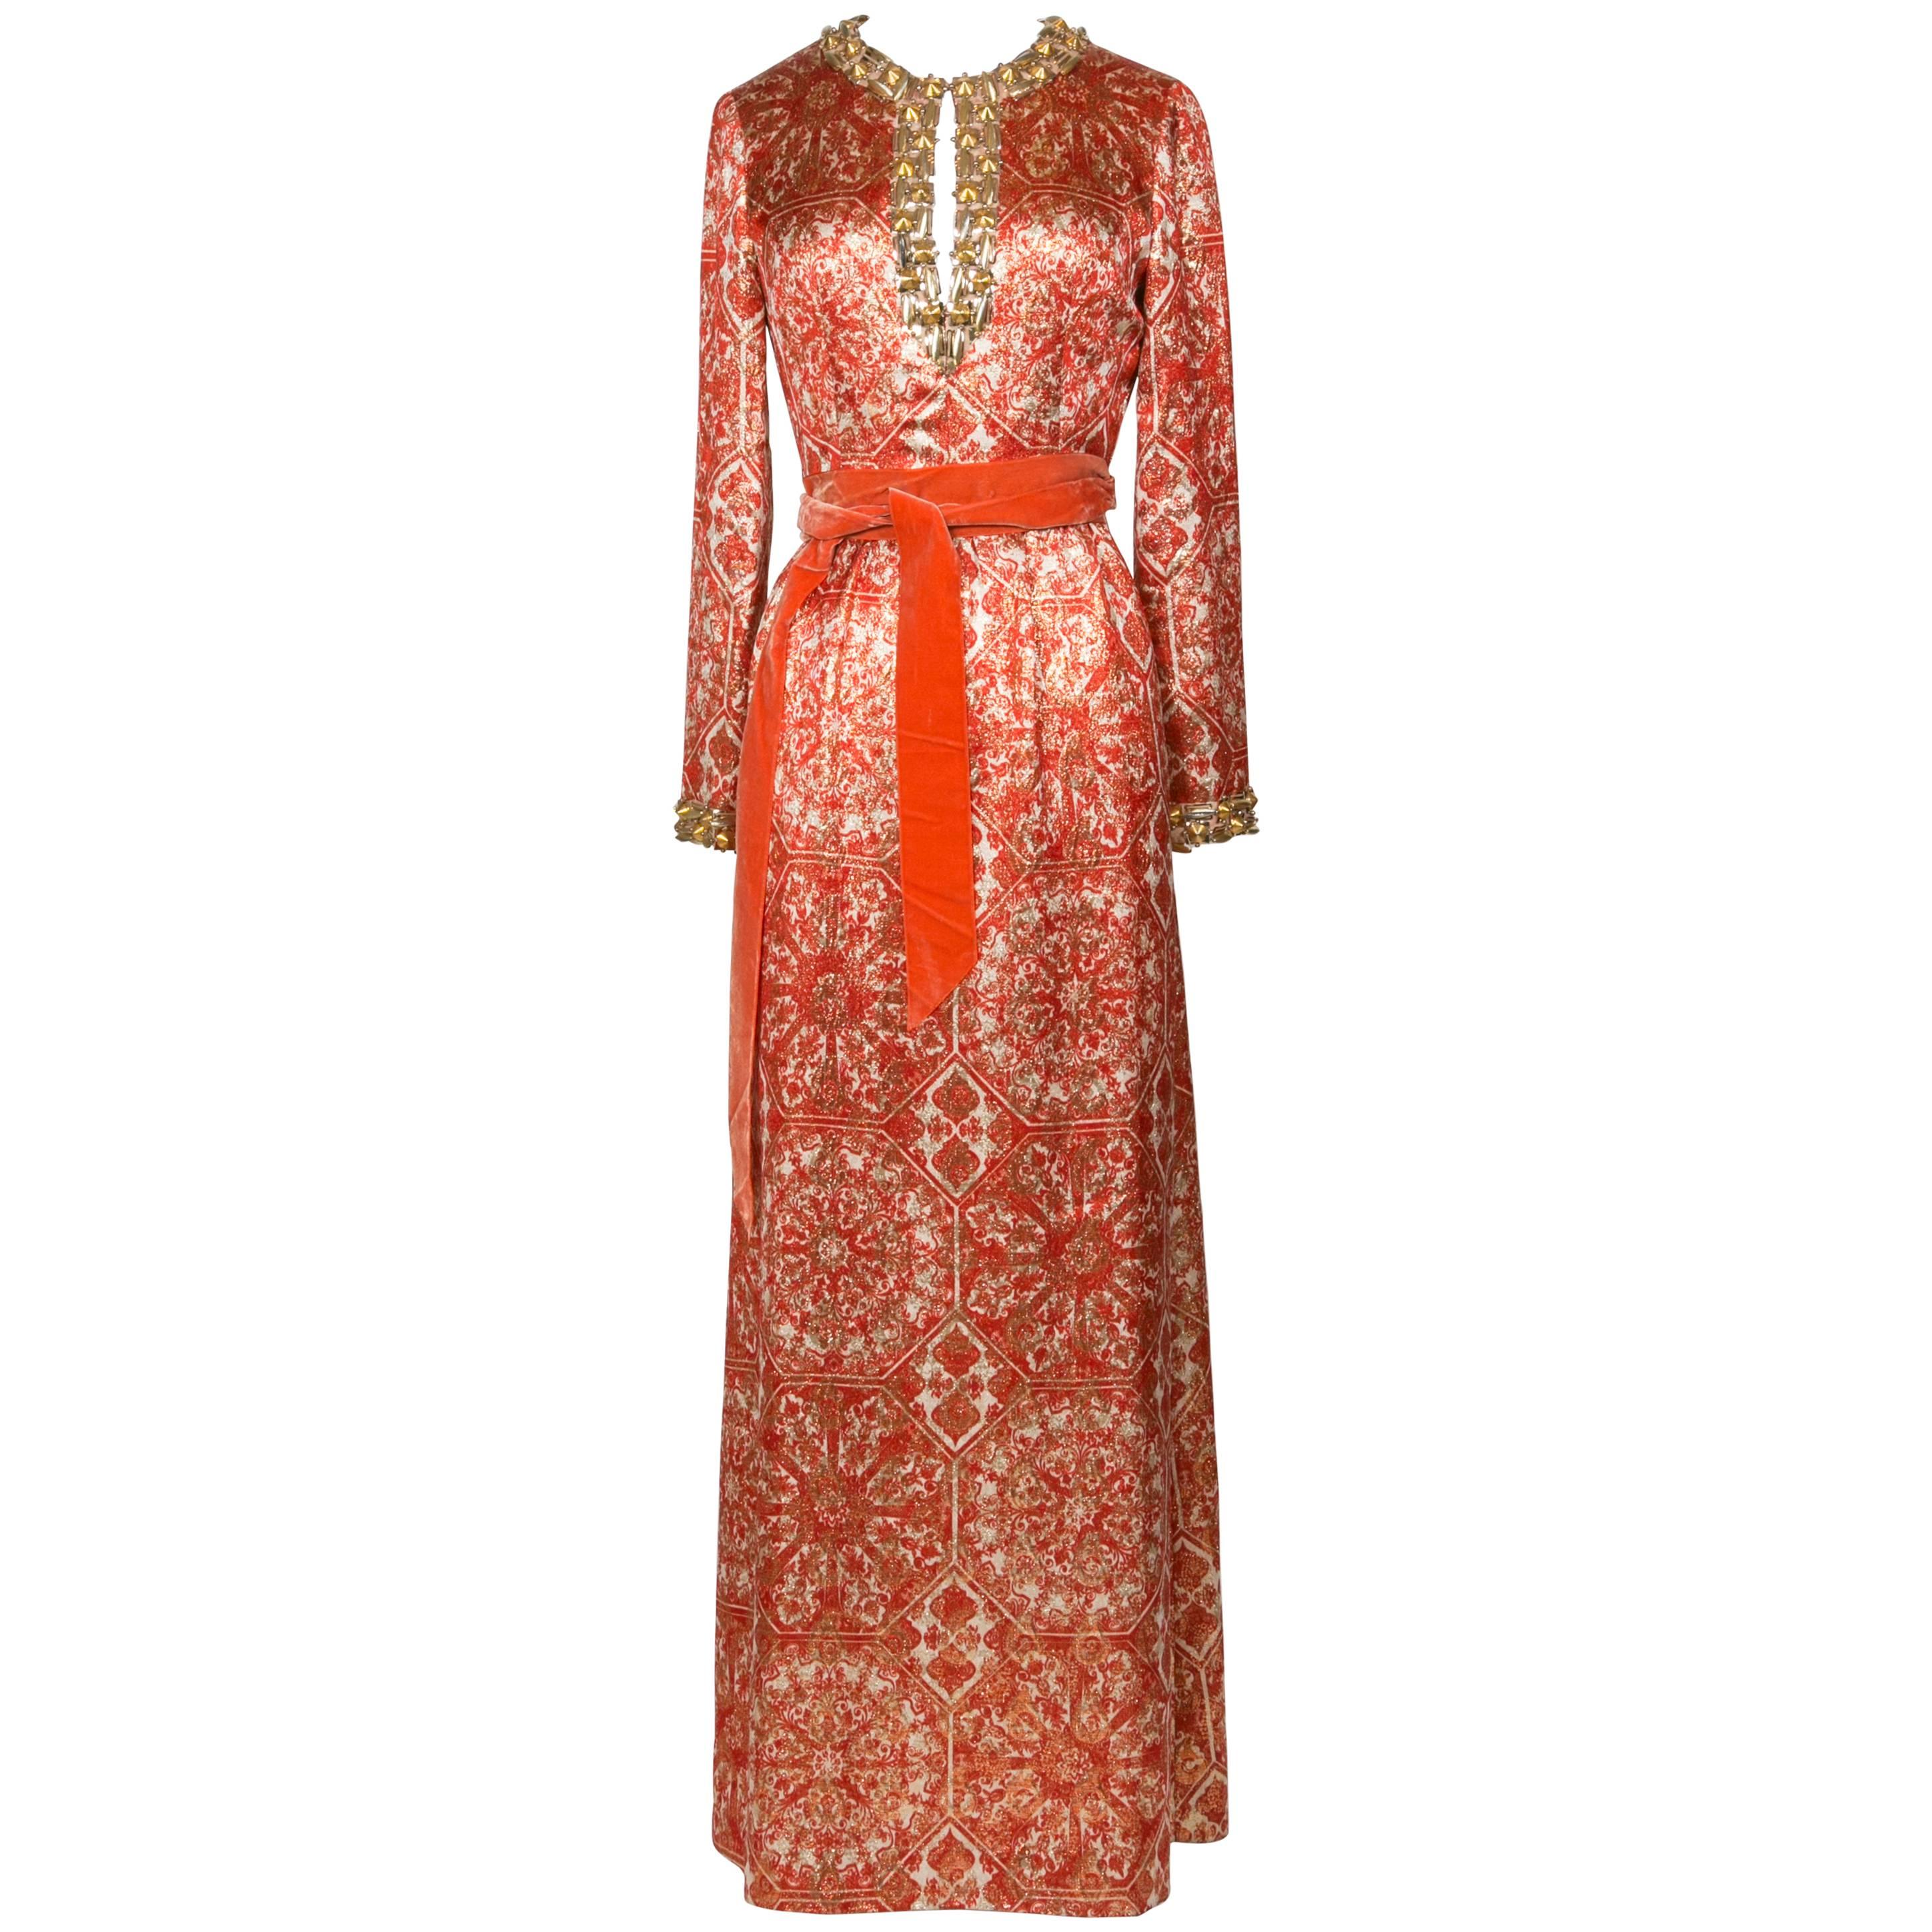 1966/67 Christian Dior Sparkling Broché Orange Dress